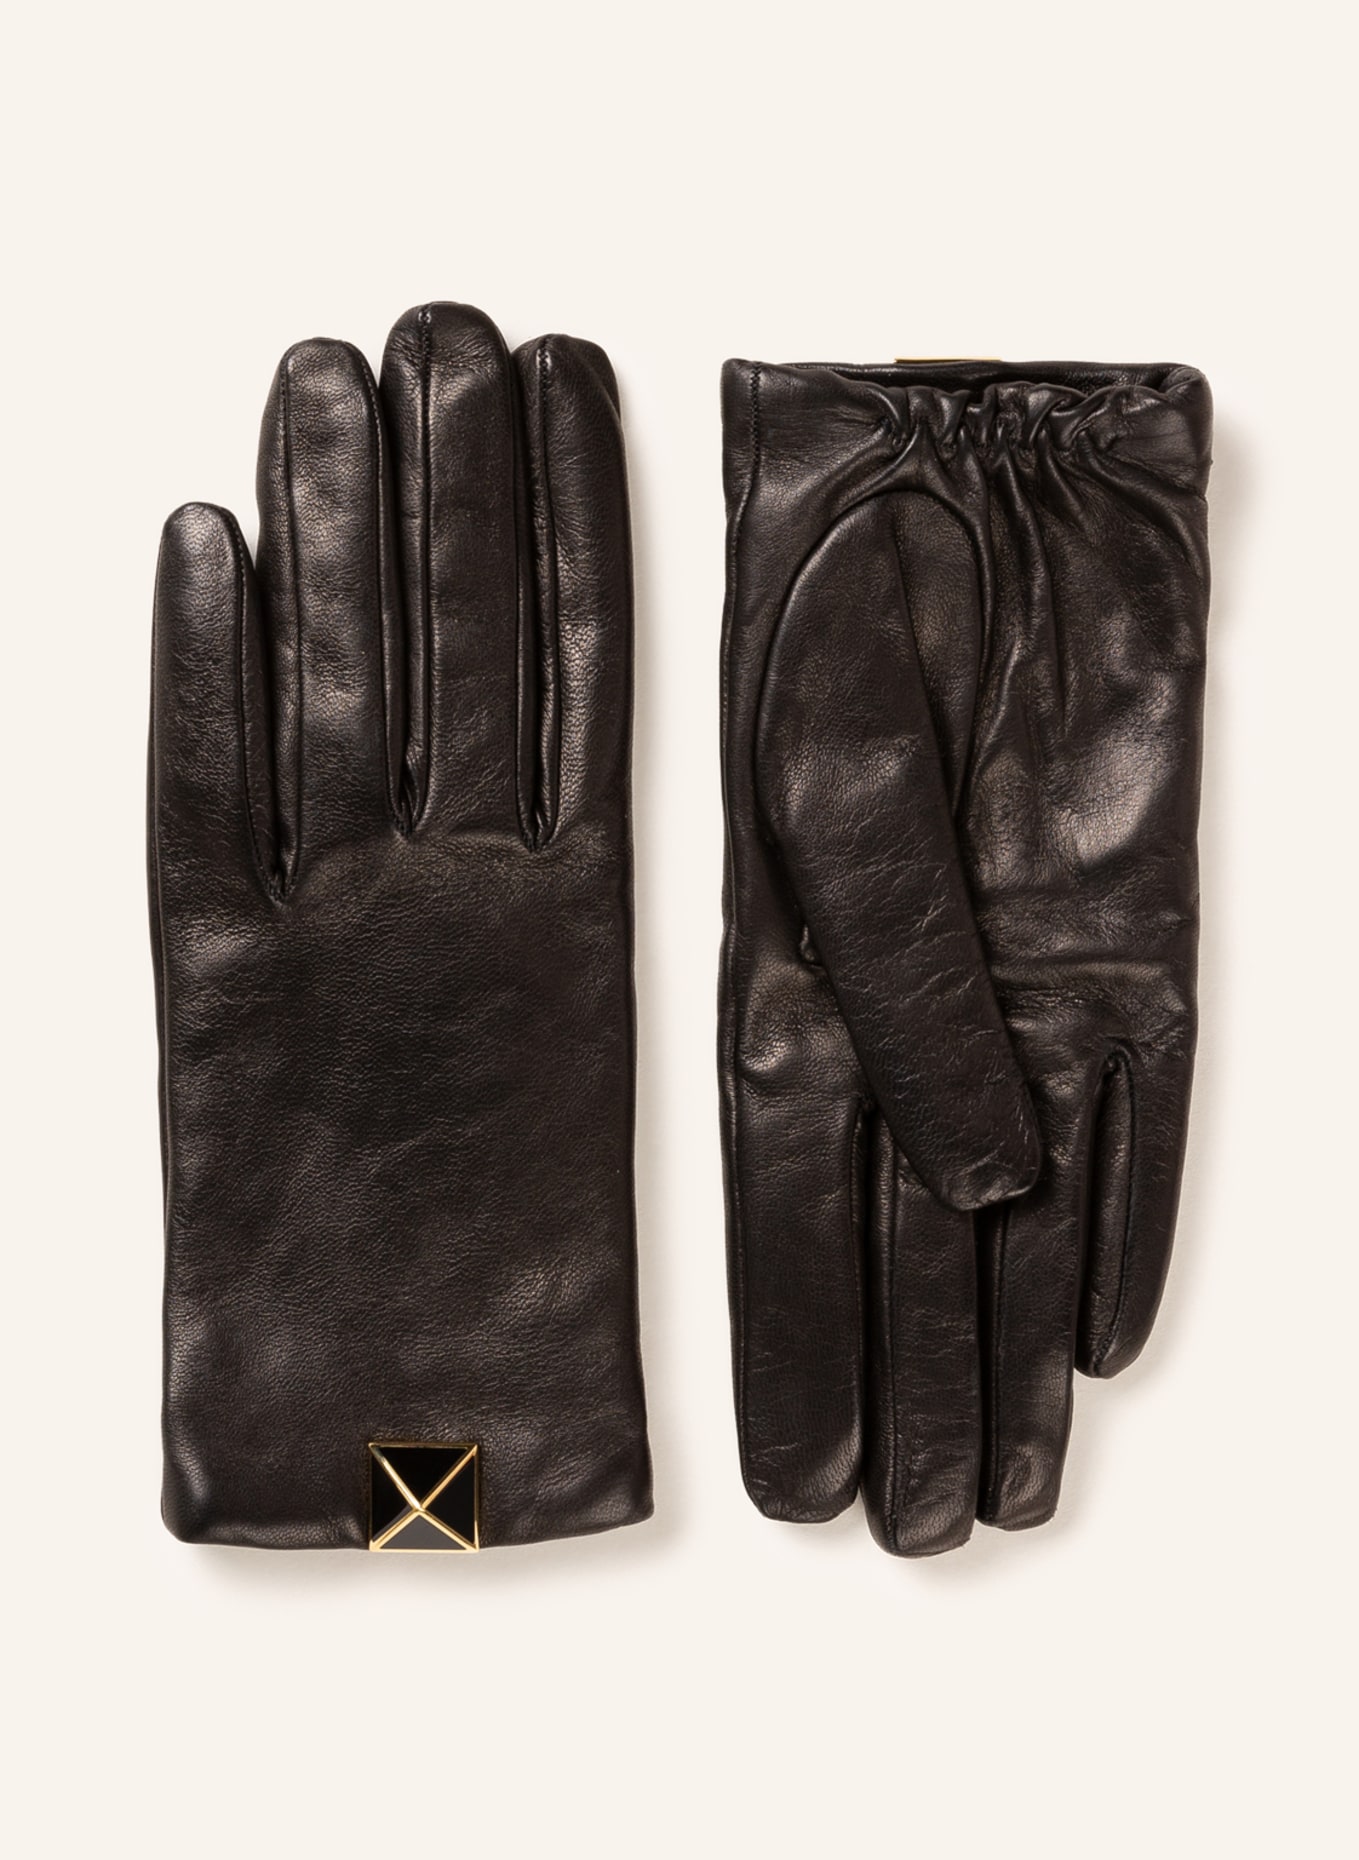 VALENTINO GARAVANI Leather gloves in gift box , Color: BLACK (Image 1)